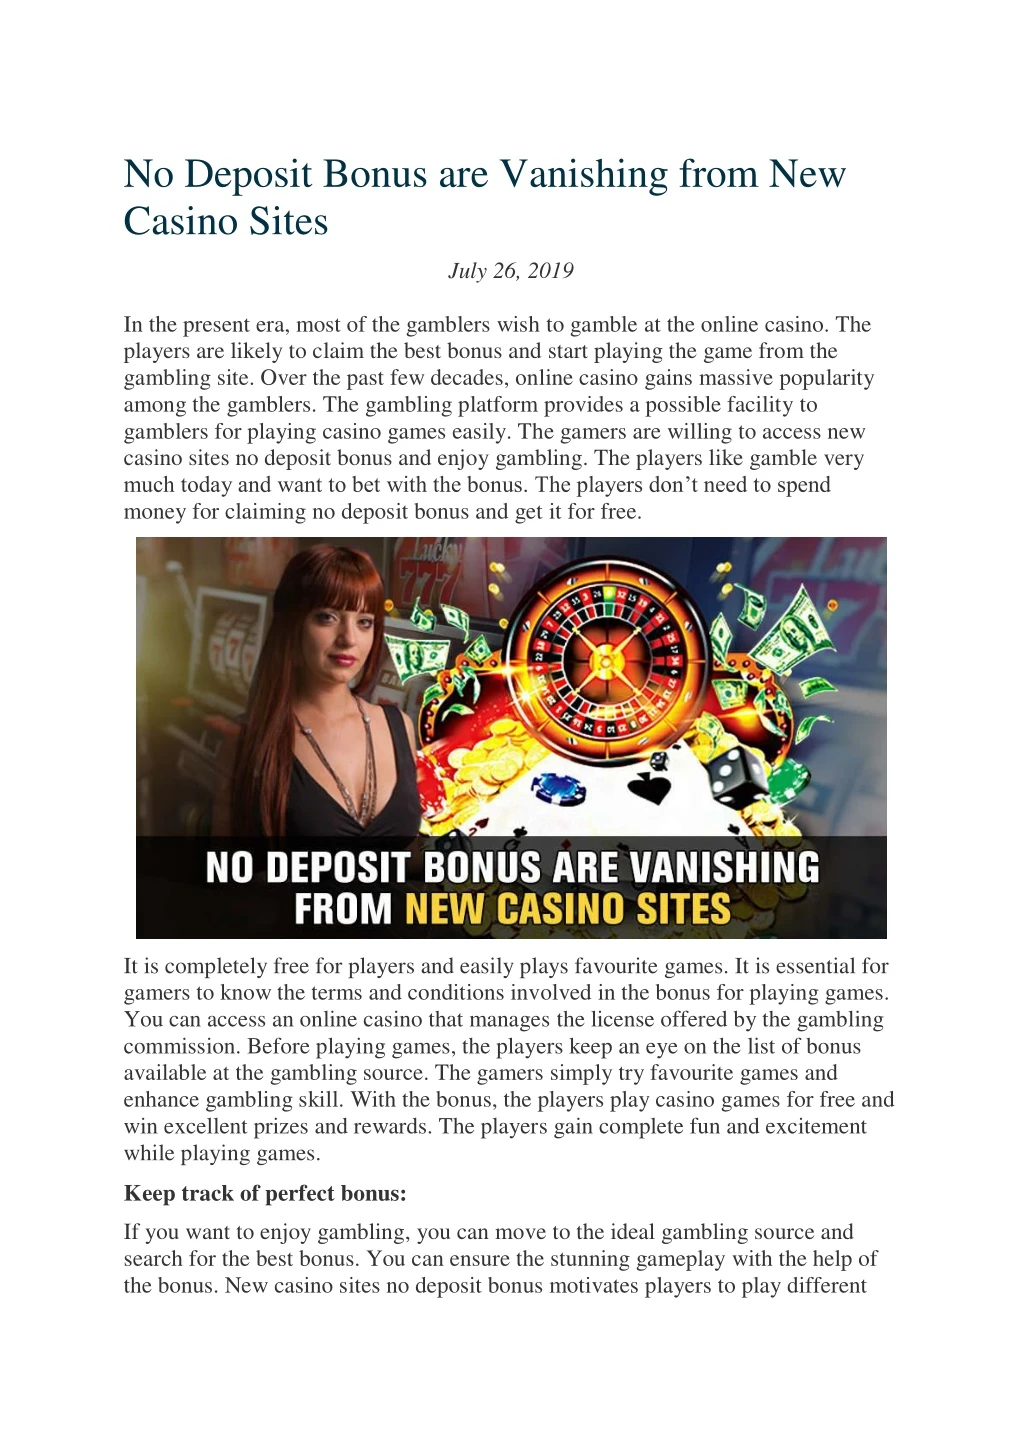 no deposit bonus are vanishing from new casino